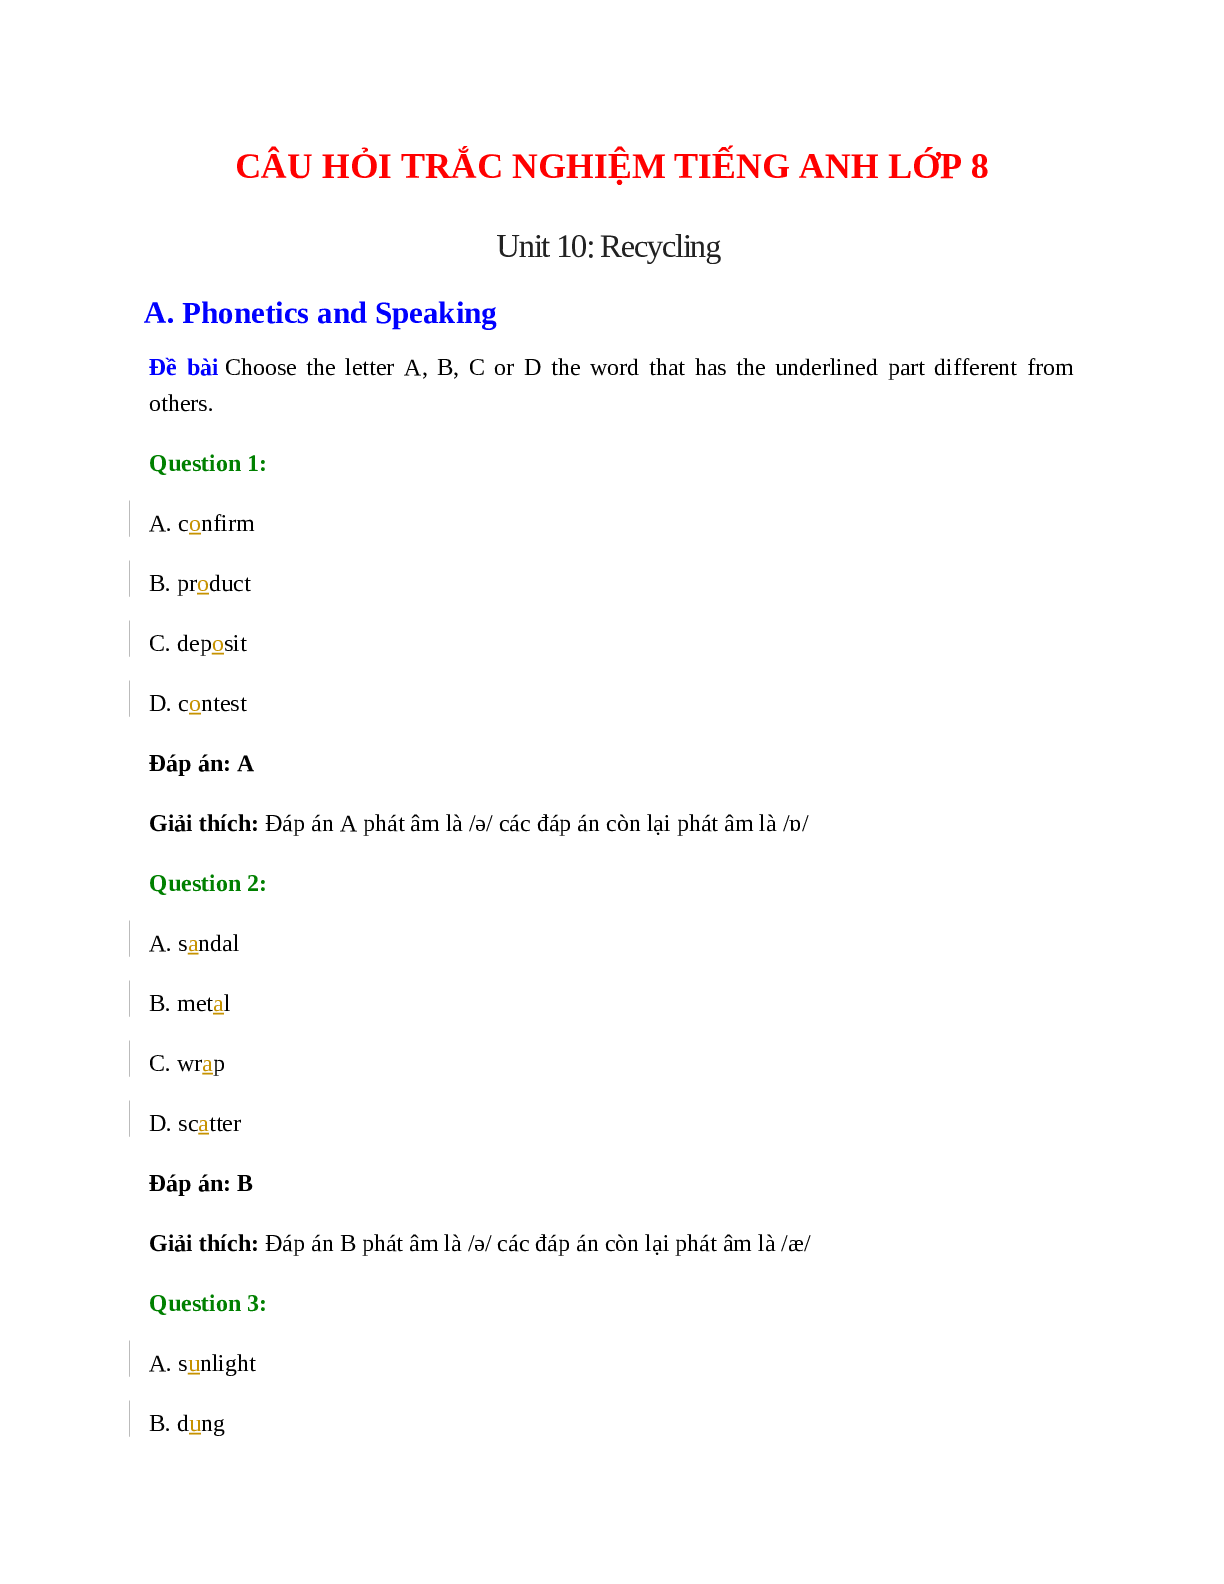 60 câu Trắc nghiệm Tiếng Anh 8 Unit 10 có đáp án 2023: Recycling (trang 1)